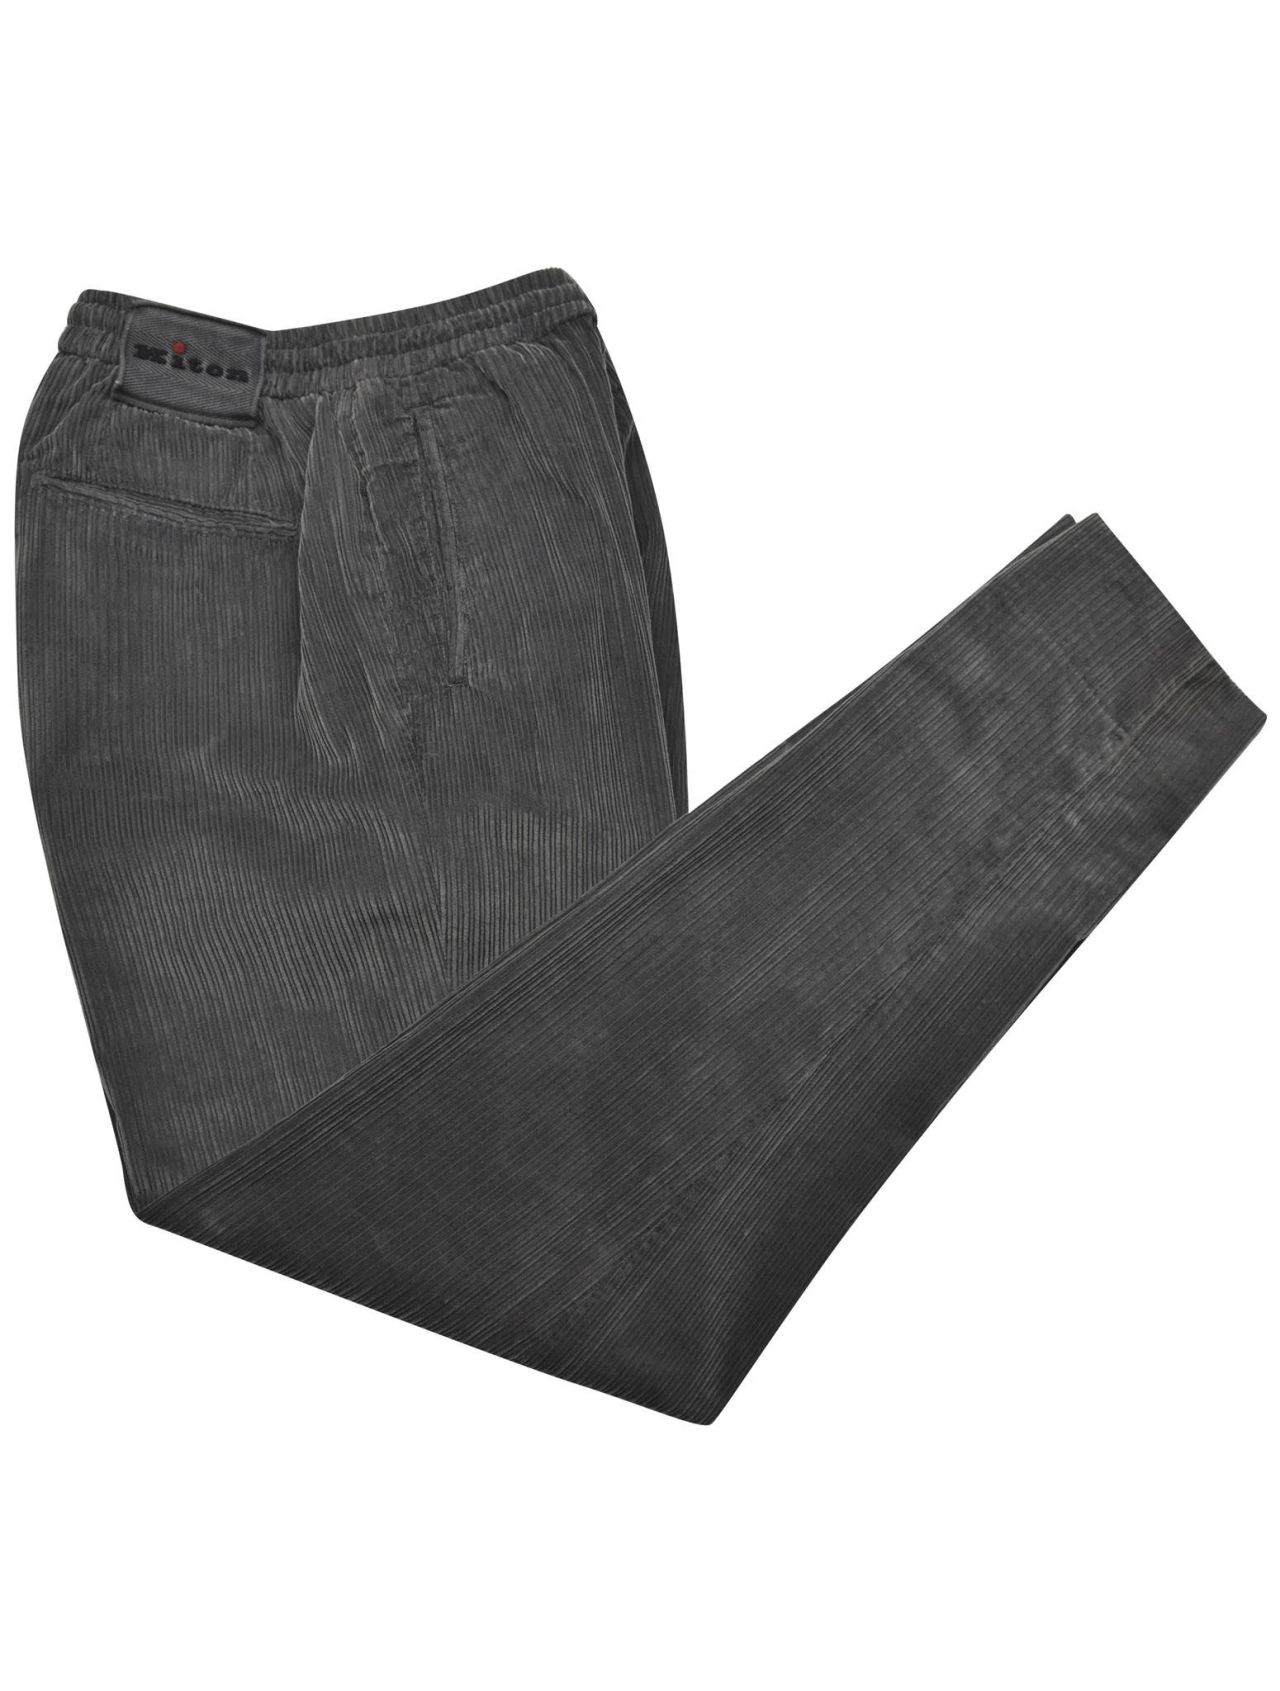 Brunello Cucinelli Velvet pants gray | Slacks